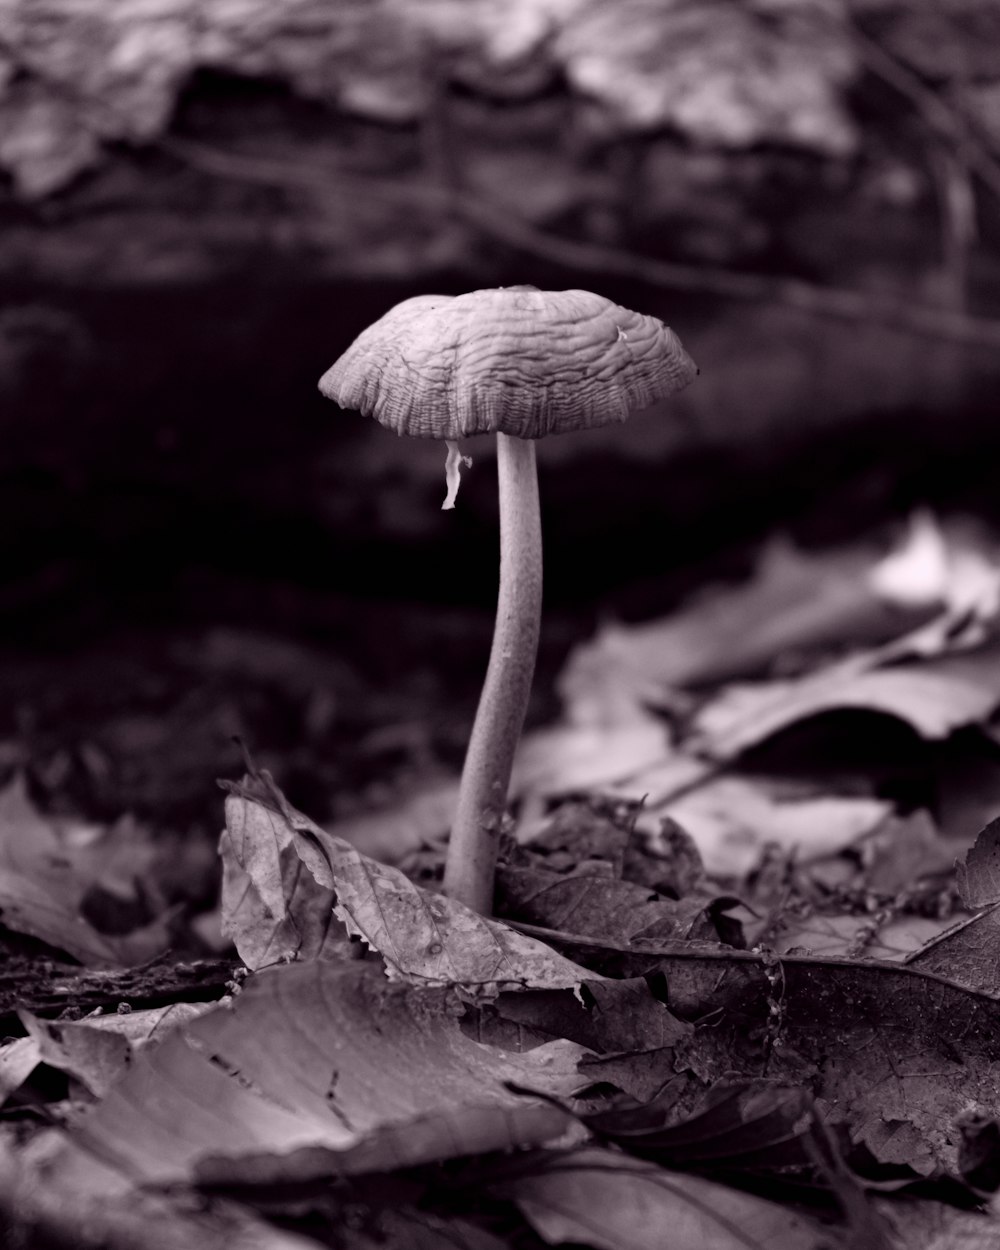 white mushroom on brown dried leaves